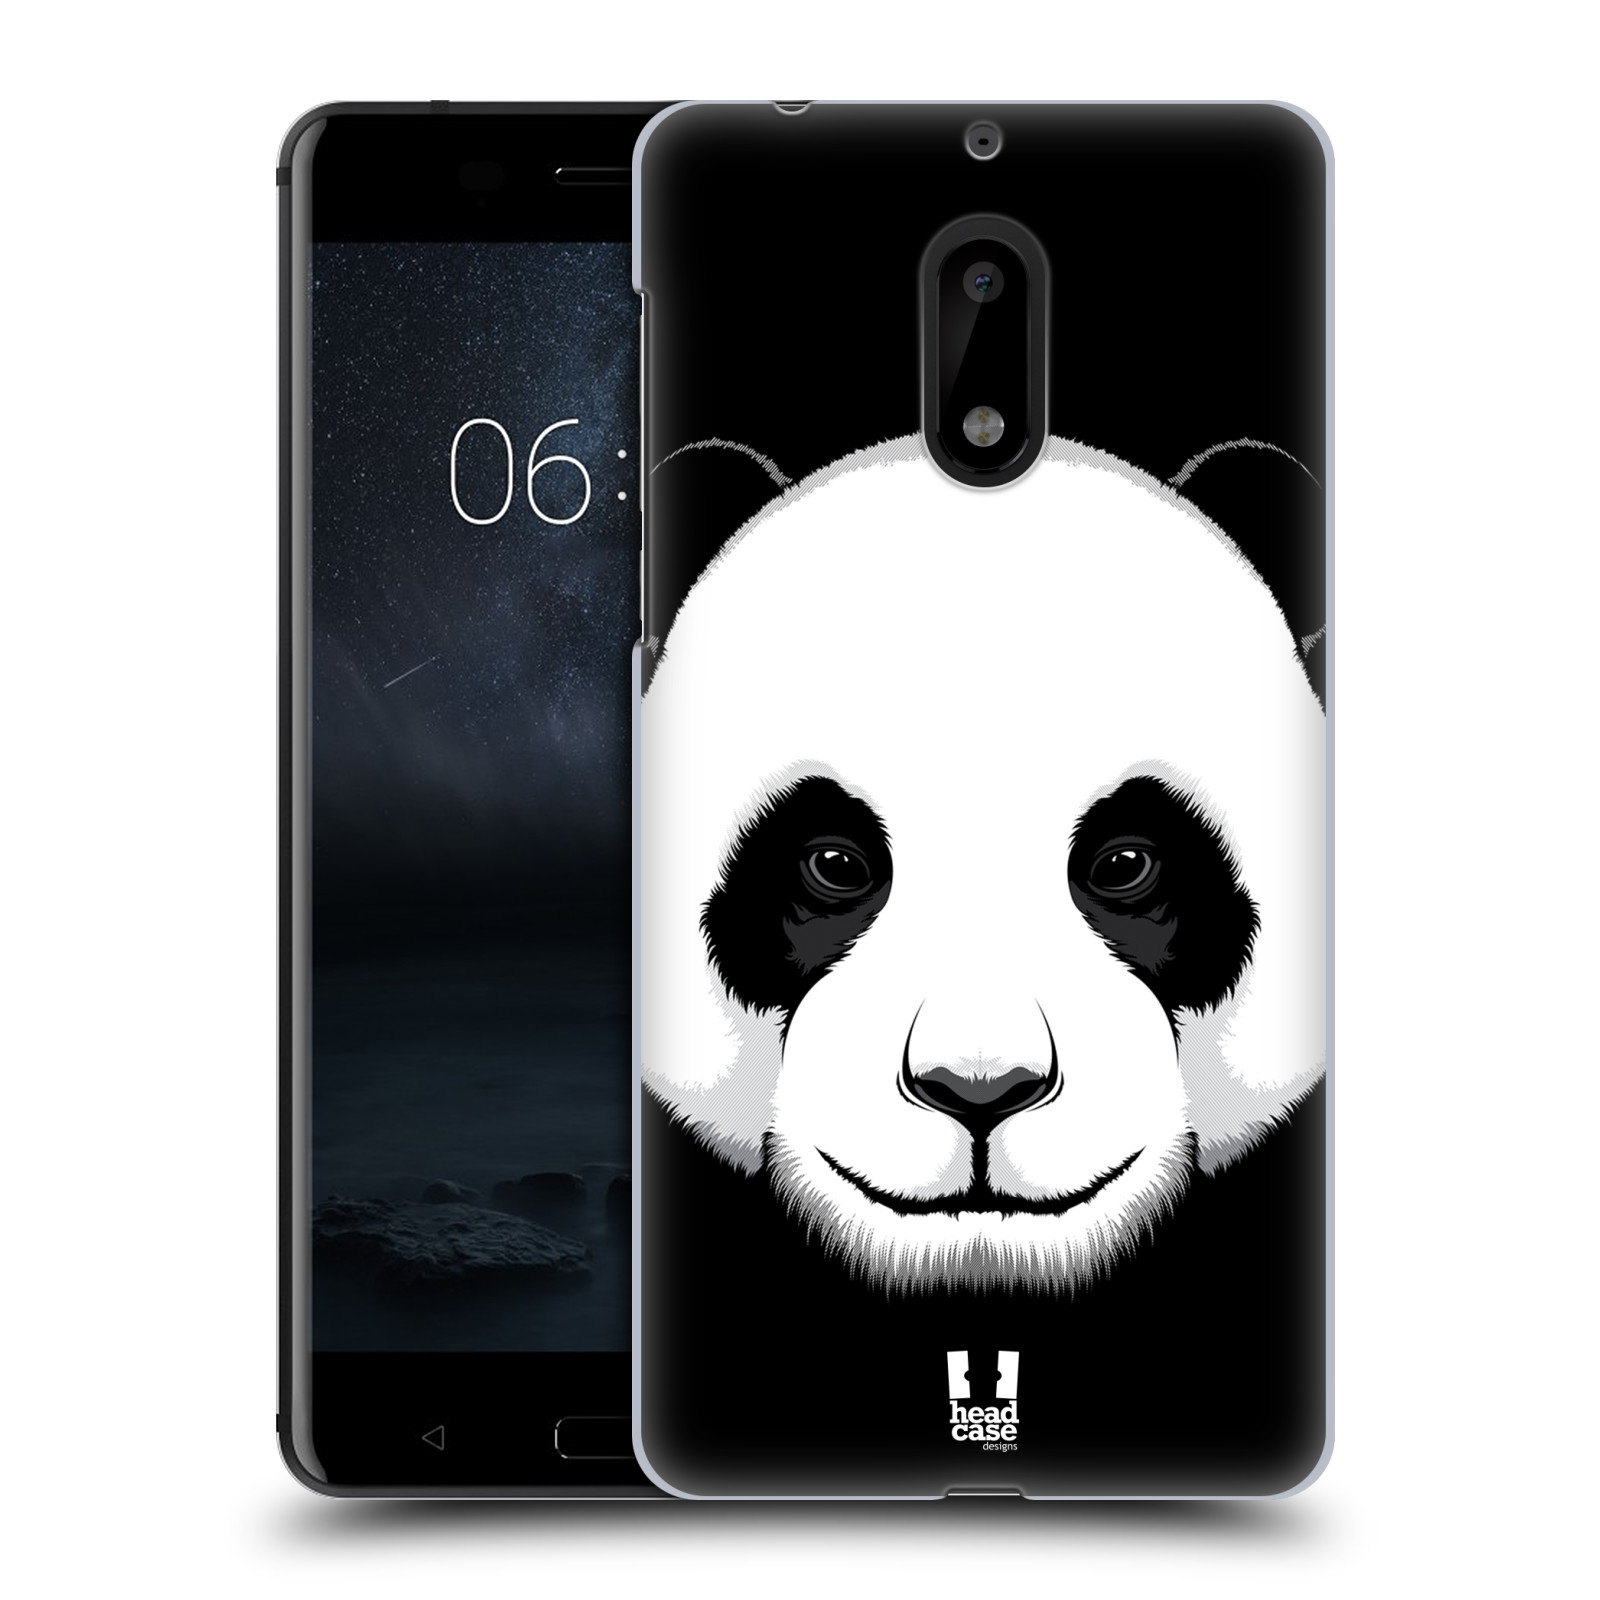 HEAD CASE plastový obal na mobil Nokia 6 vzor Zvíře kreslená tvář panda